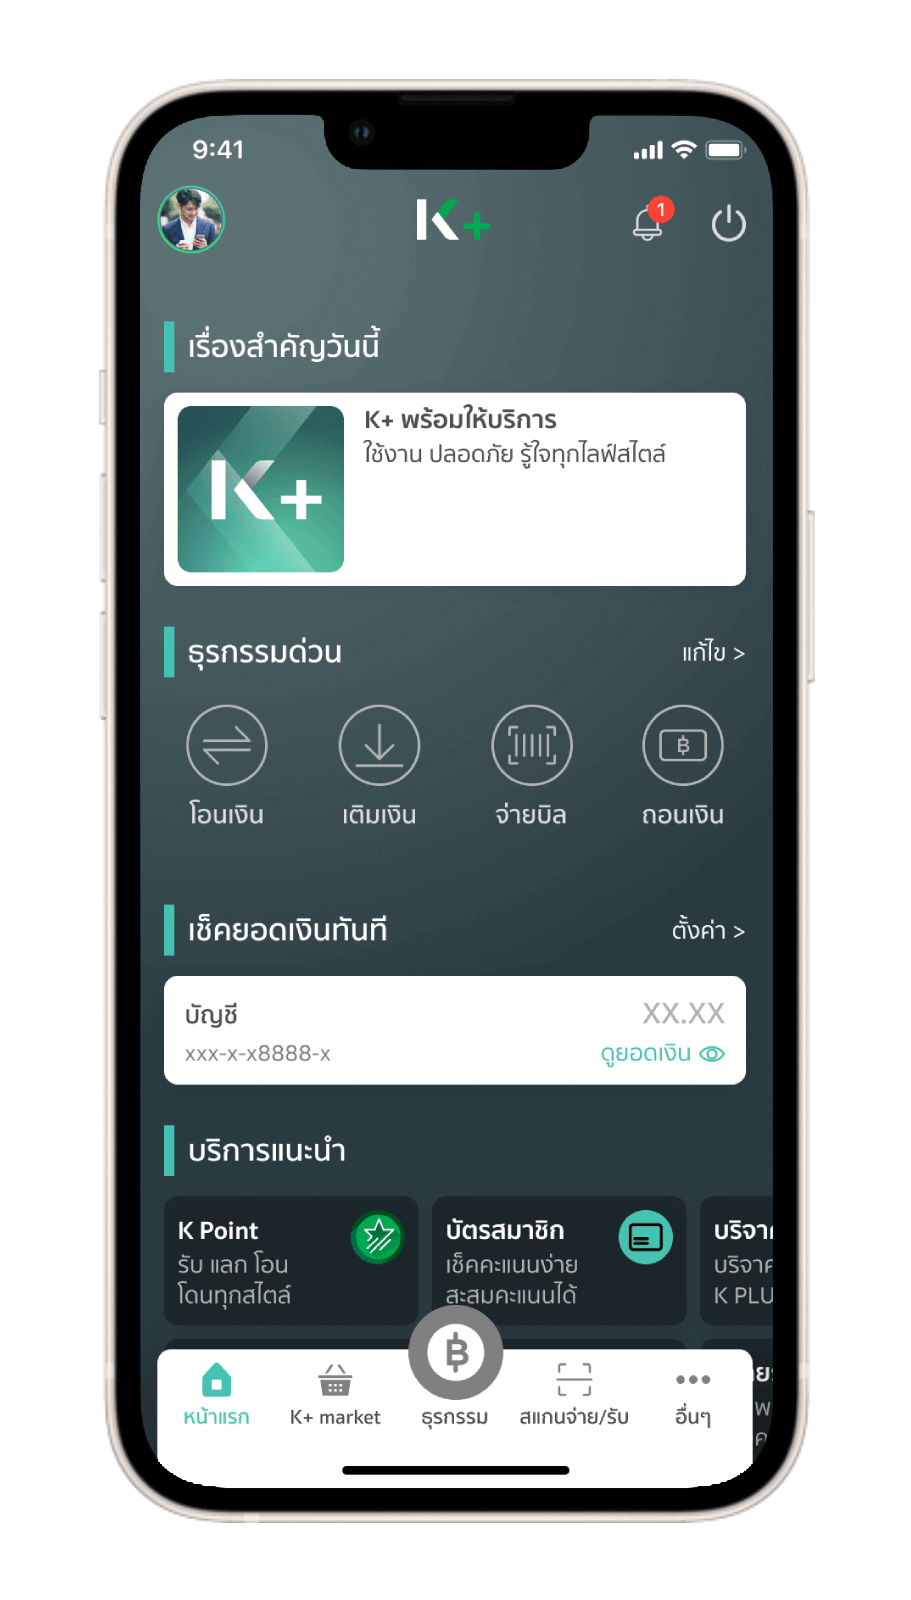 สมัครใช้บริการ K Plus | K Plus - ธนาคารกสิกรไทย